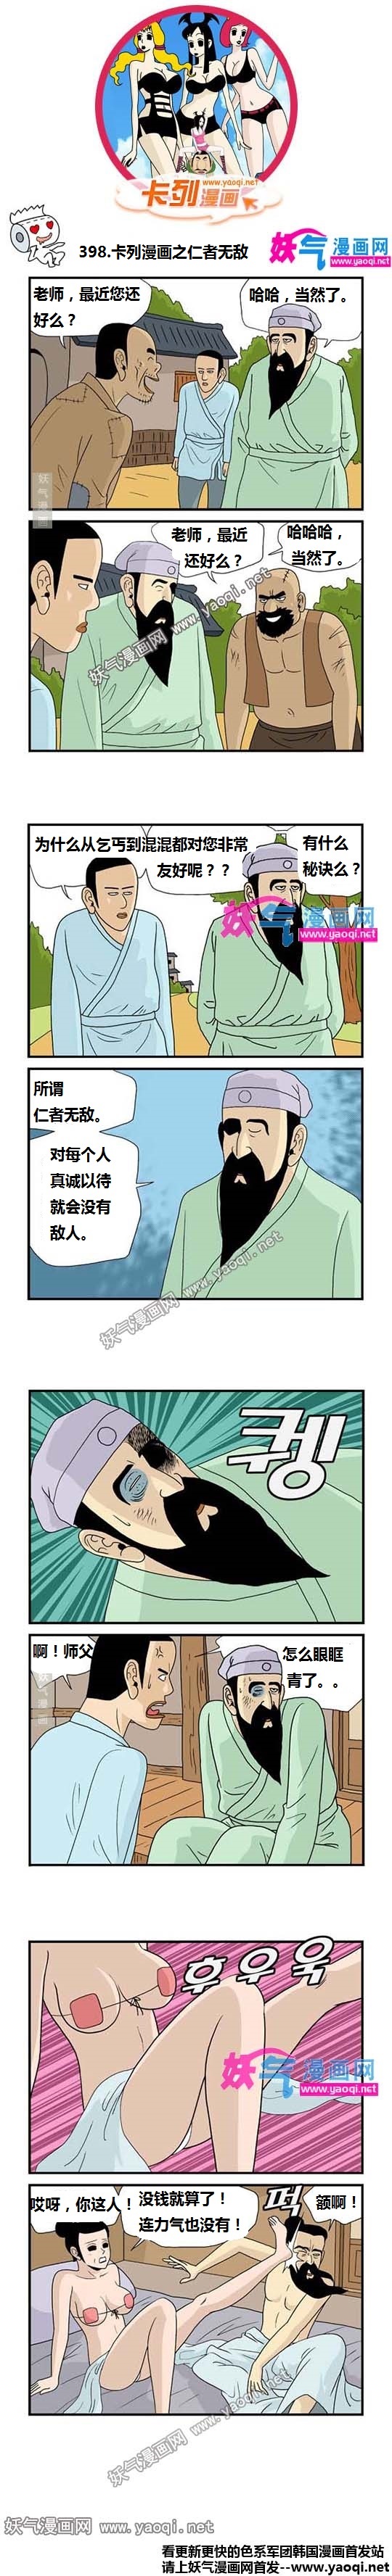 看漫卡列漫画:仁者无敌(www.YaoQi.Net)